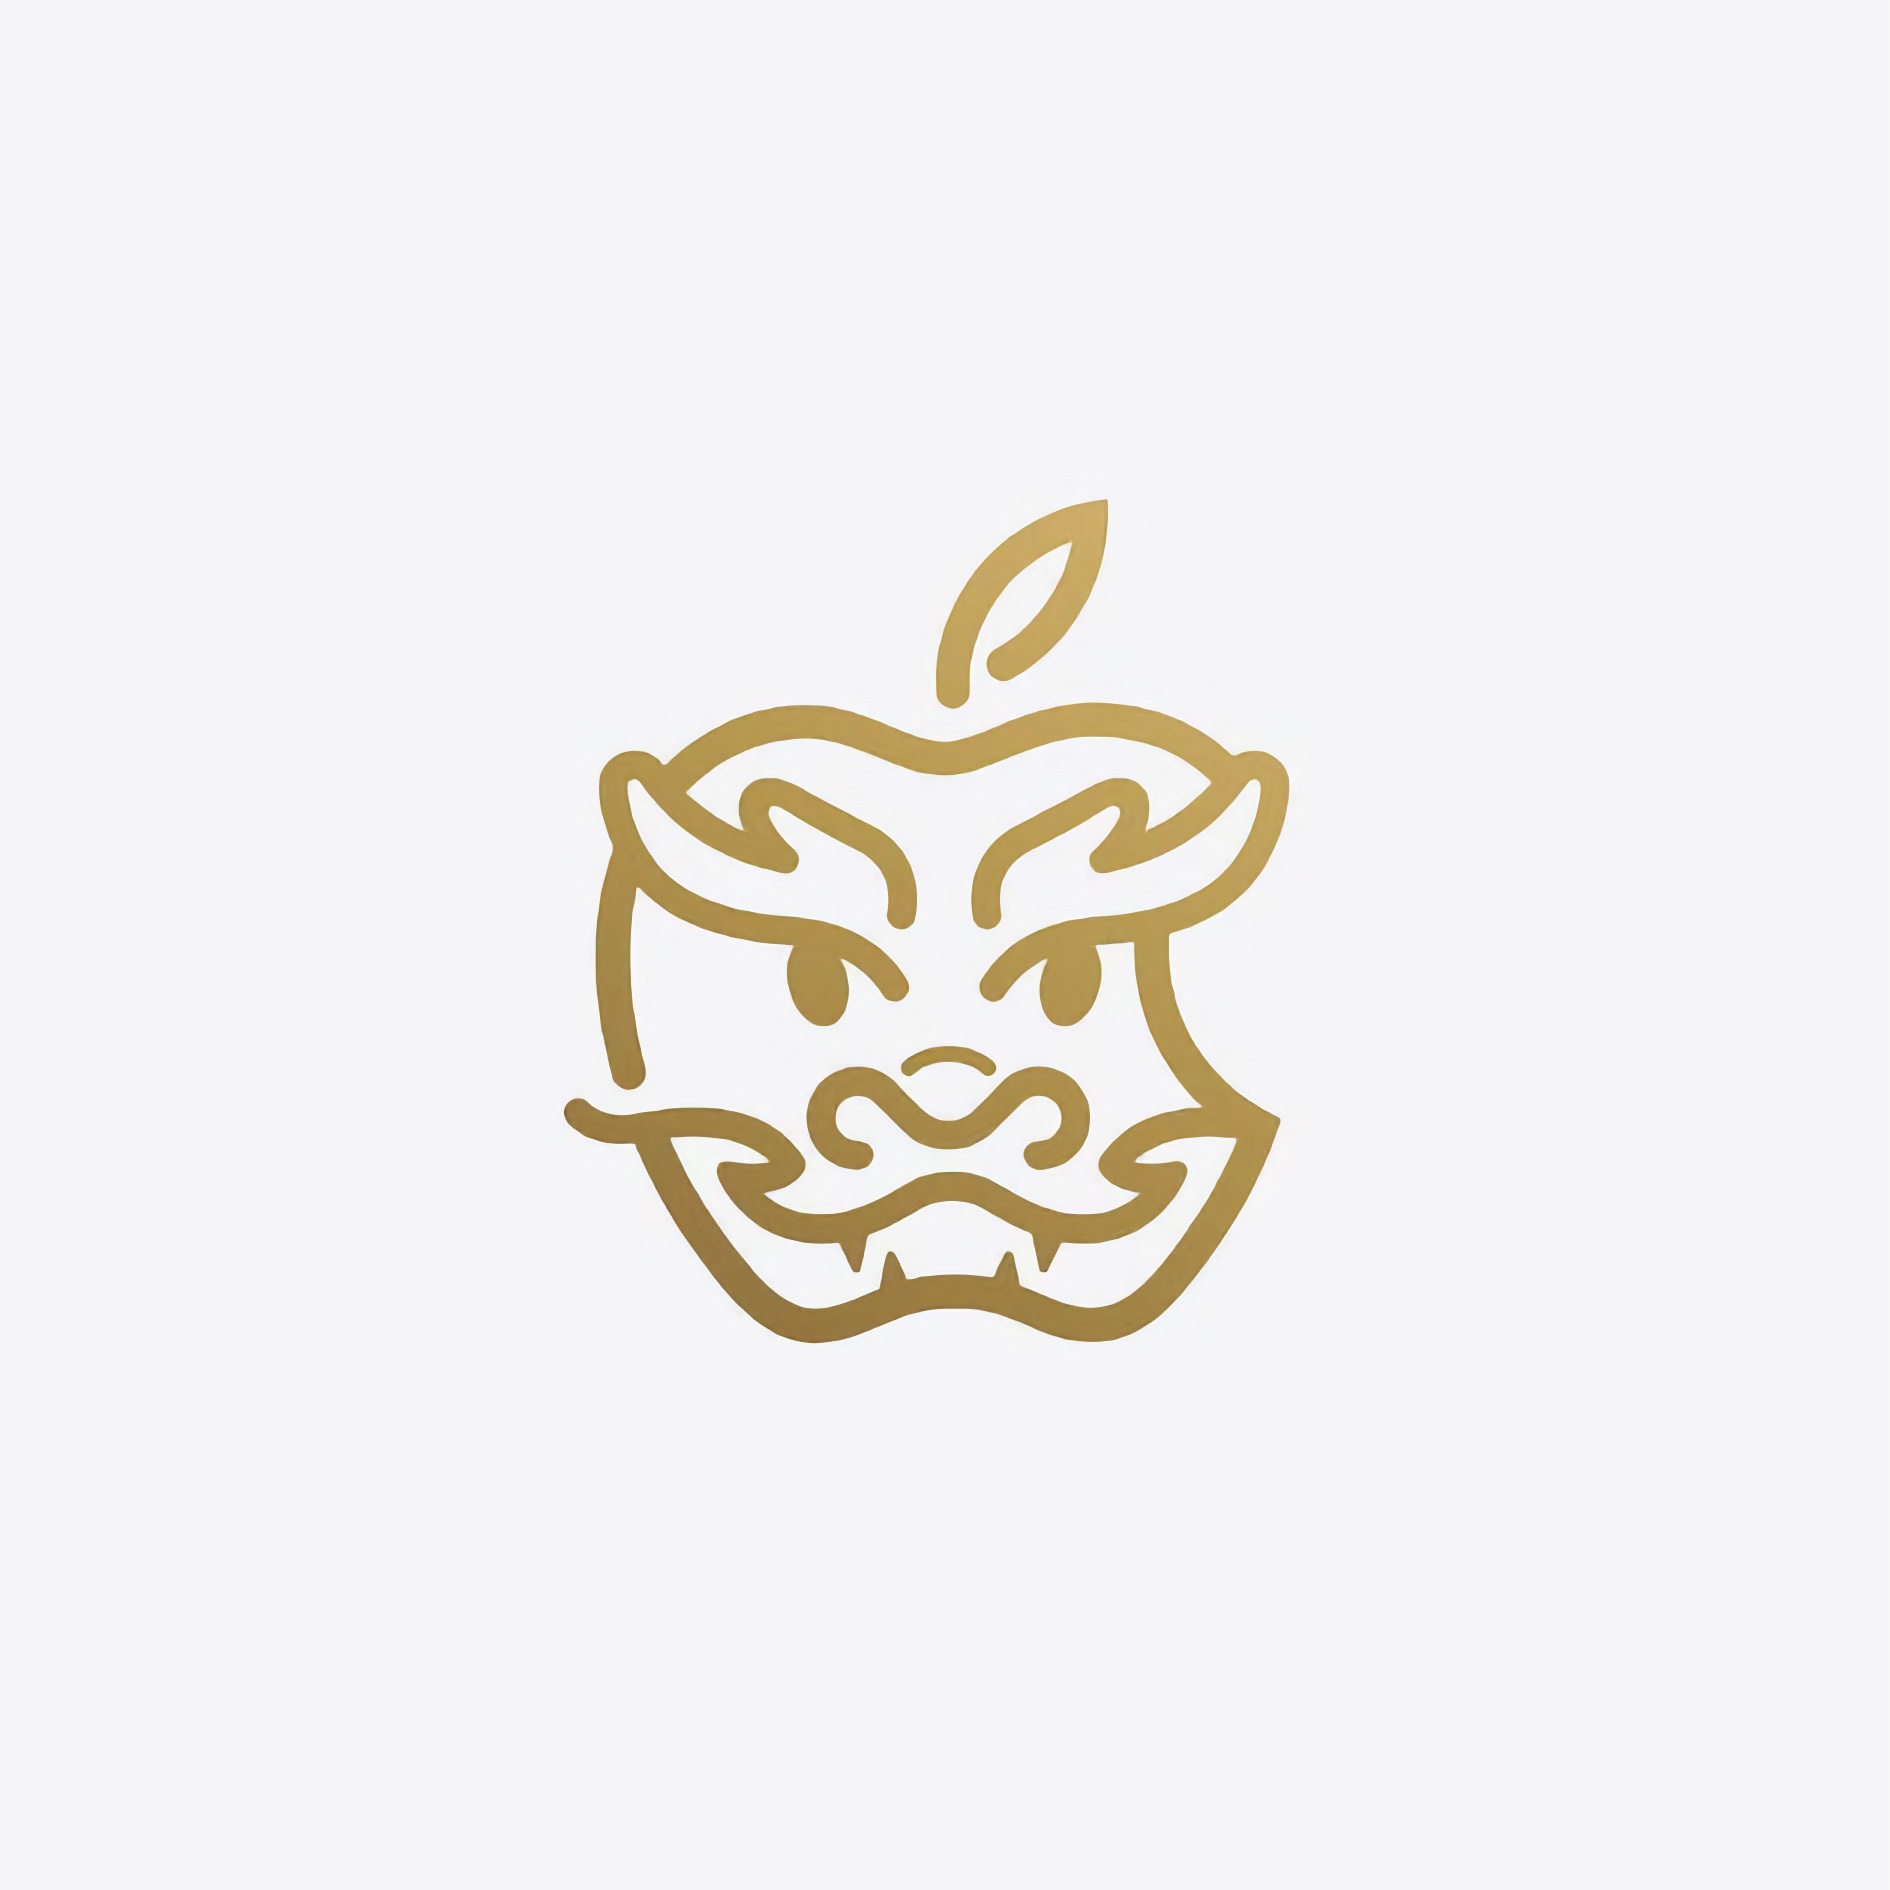 Подарочная карта-стикер будет выпущена ограниченным тиражом в Китае с дизайном в виде логотипа Apple стилизованного в символ наступающего года – дракона 